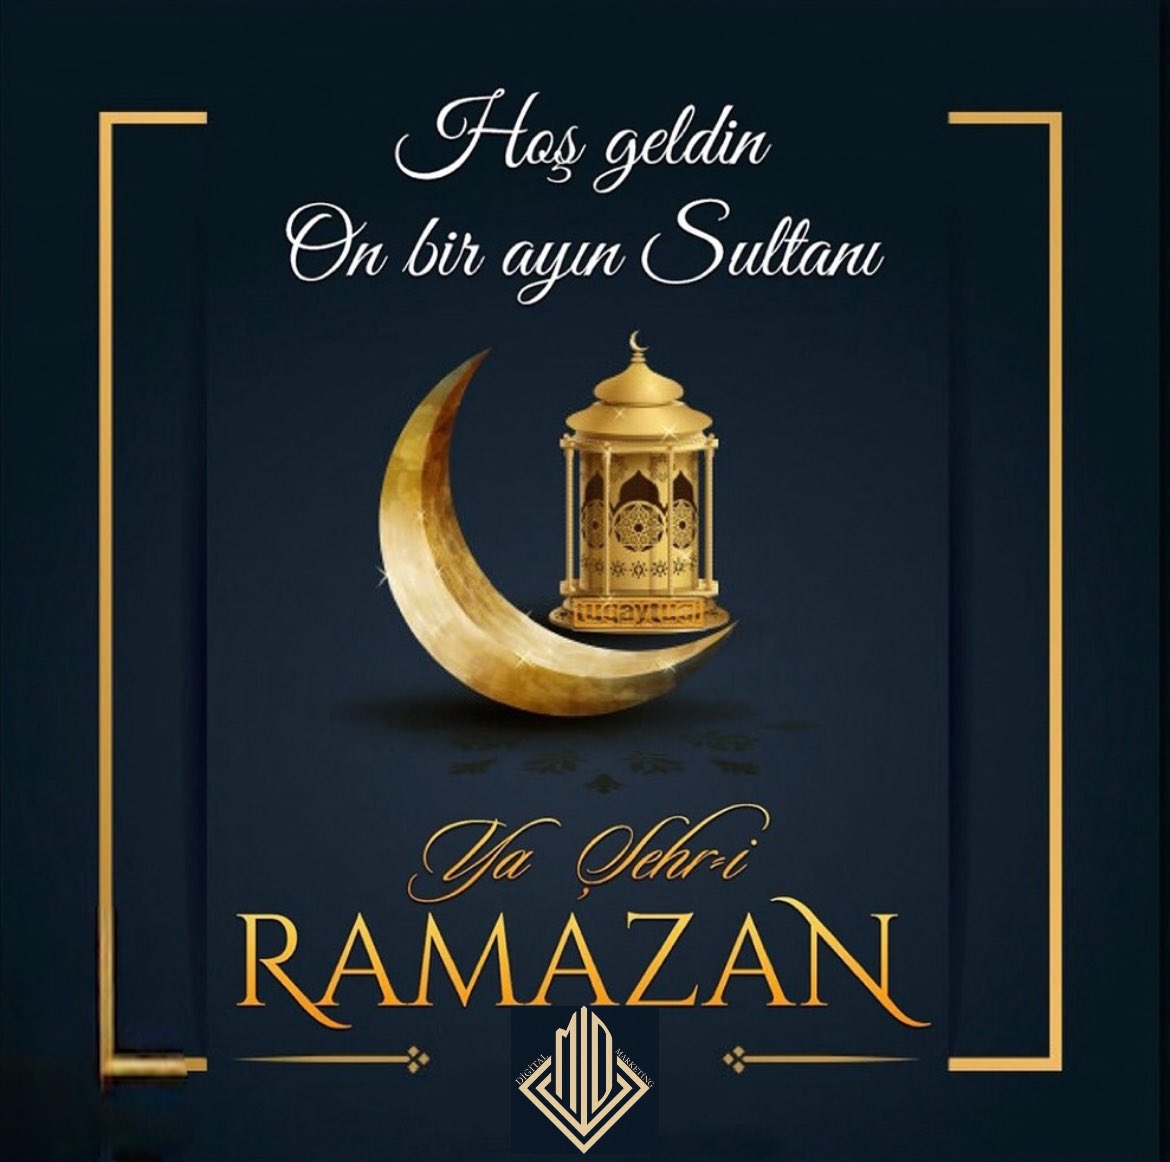 Başı rahmеt, ortası mağfirеt, sonu cеhеnnеmden kurtuluş olan 11 ayın sultanı. Hoş geldin Ya Şehr-i #Ramazan. #hayırlıramazanlar